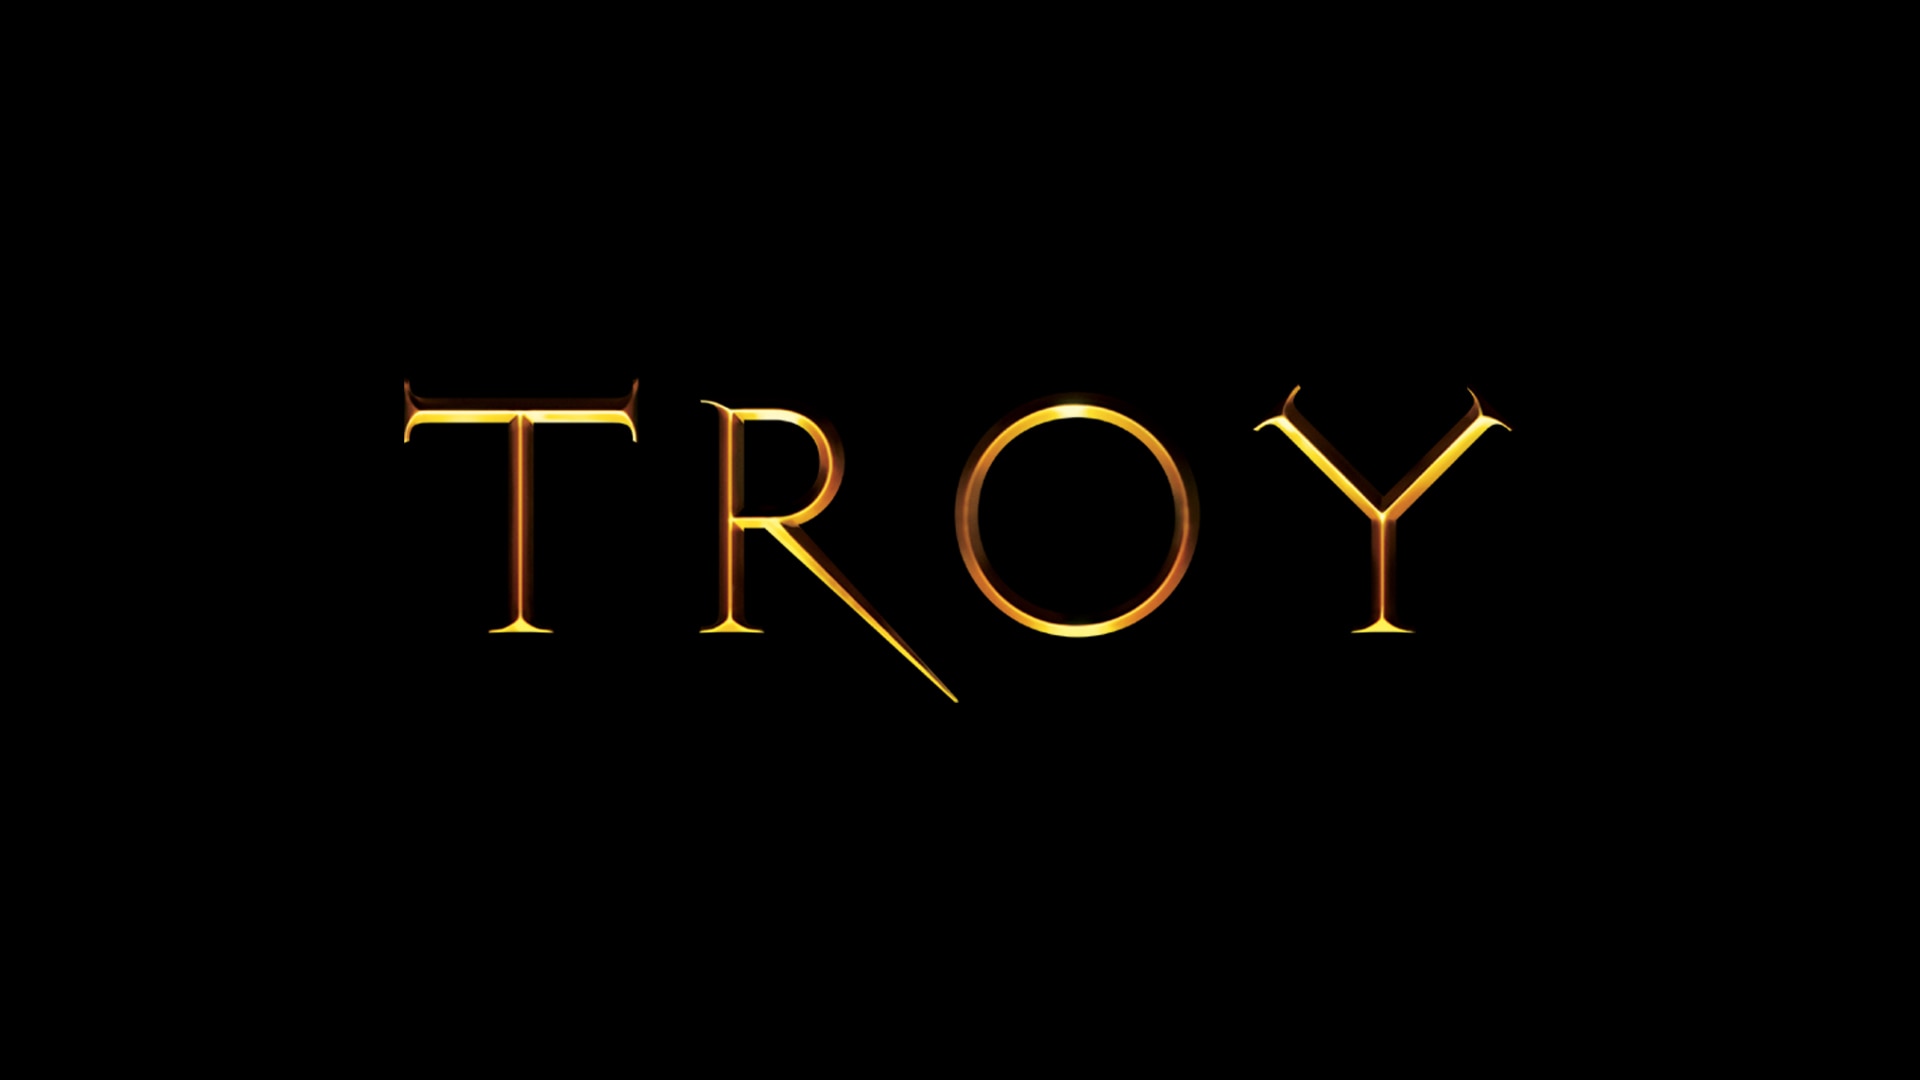 Troy - USANetwork.com